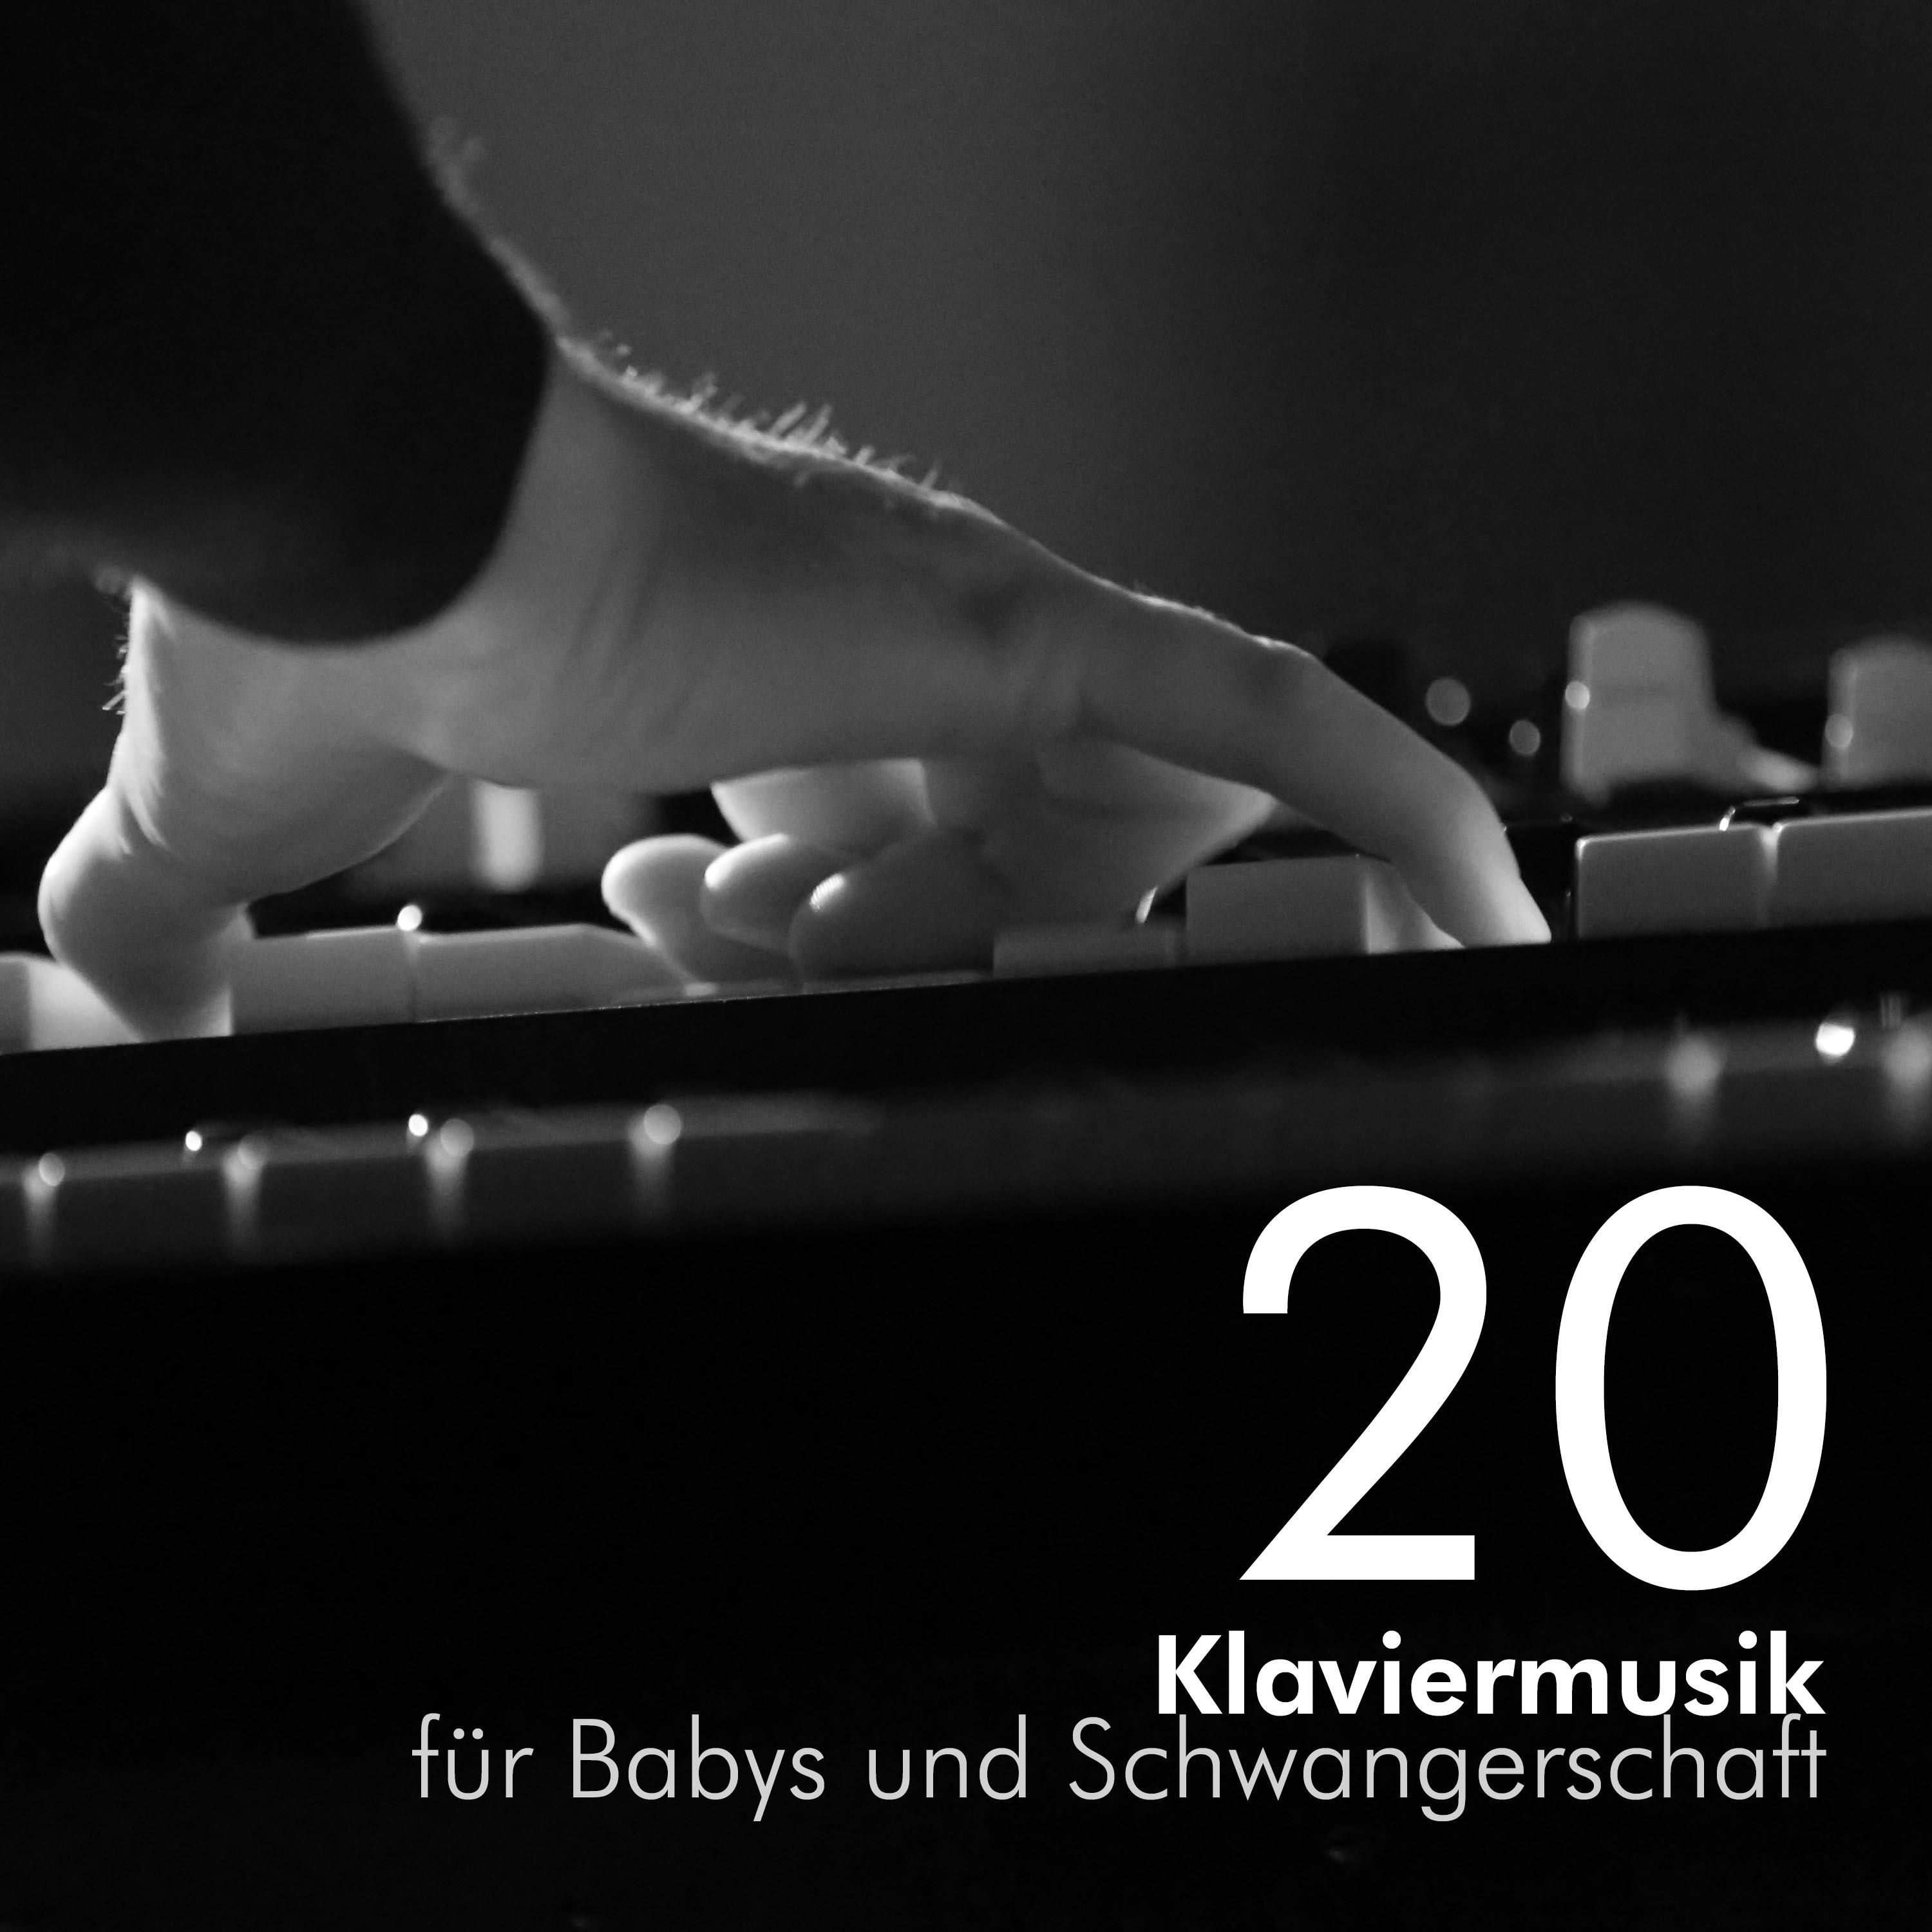 20 Klaviermusik für Babys und Schwangerschaft - die besten Klaviermelodien und Wiegenlieder für schwangere Mütter, Neugeborene, Kleinkinder, Kinder, Babys